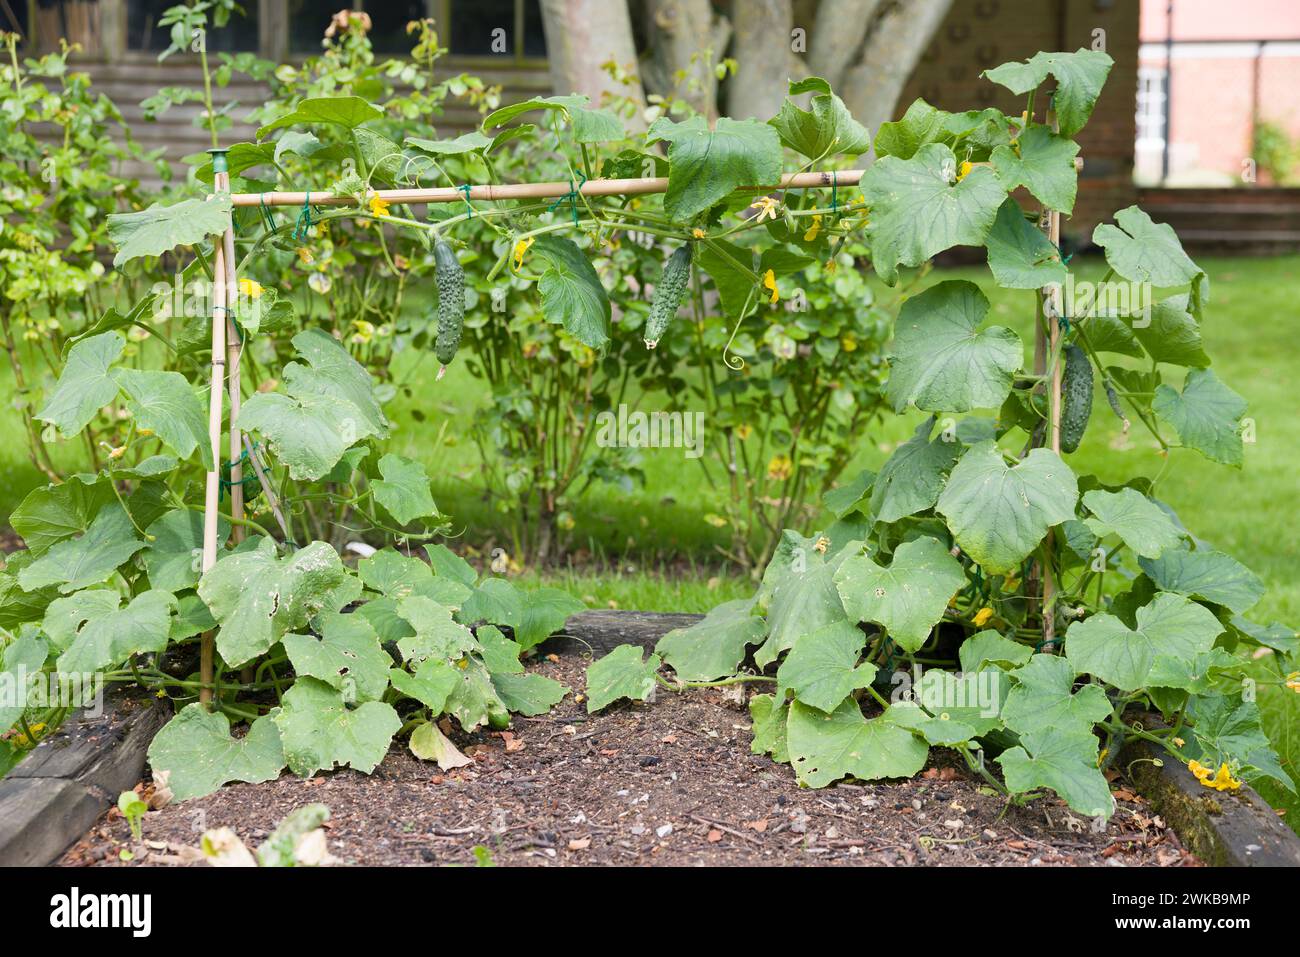 Piante di cetriolo (Bedfordshire Prize ridged Cucumbers) che crescono all'aperto in un orto inglese in estate, Regno Unito Foto Stock